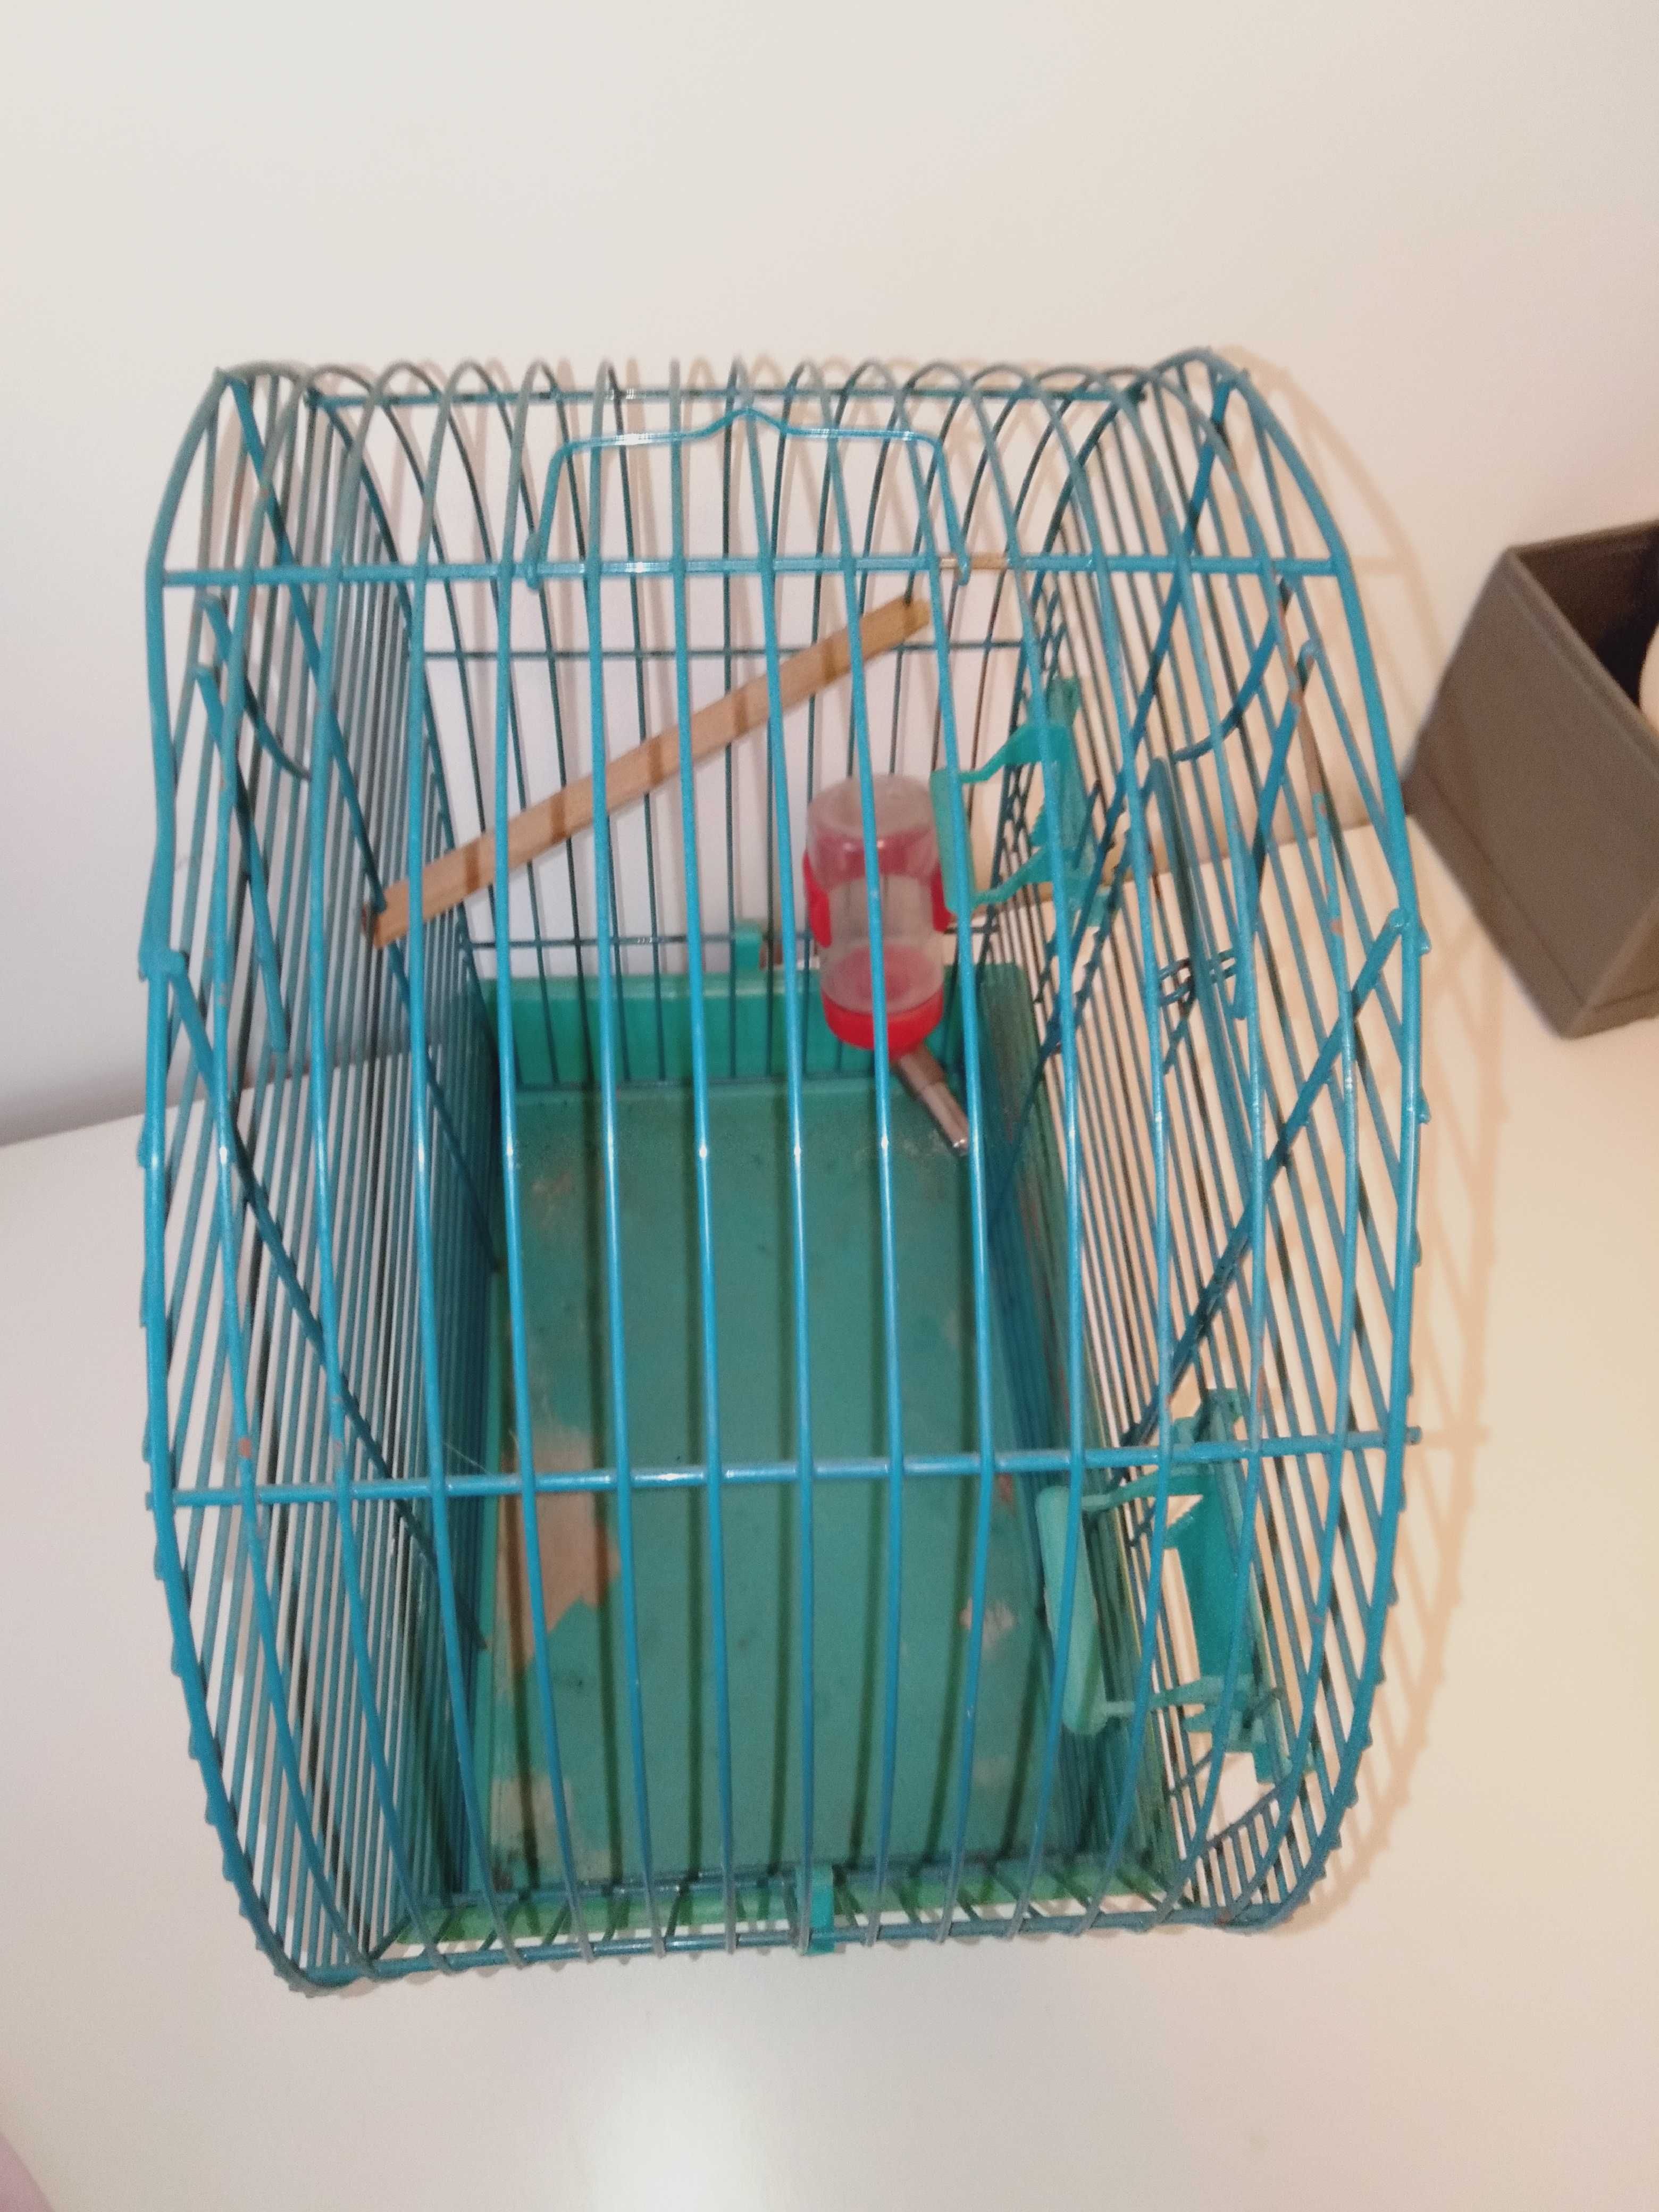 Wysoka klatka dla małego ptaszka lub gryzonia podstawa 30 x 20 cm.